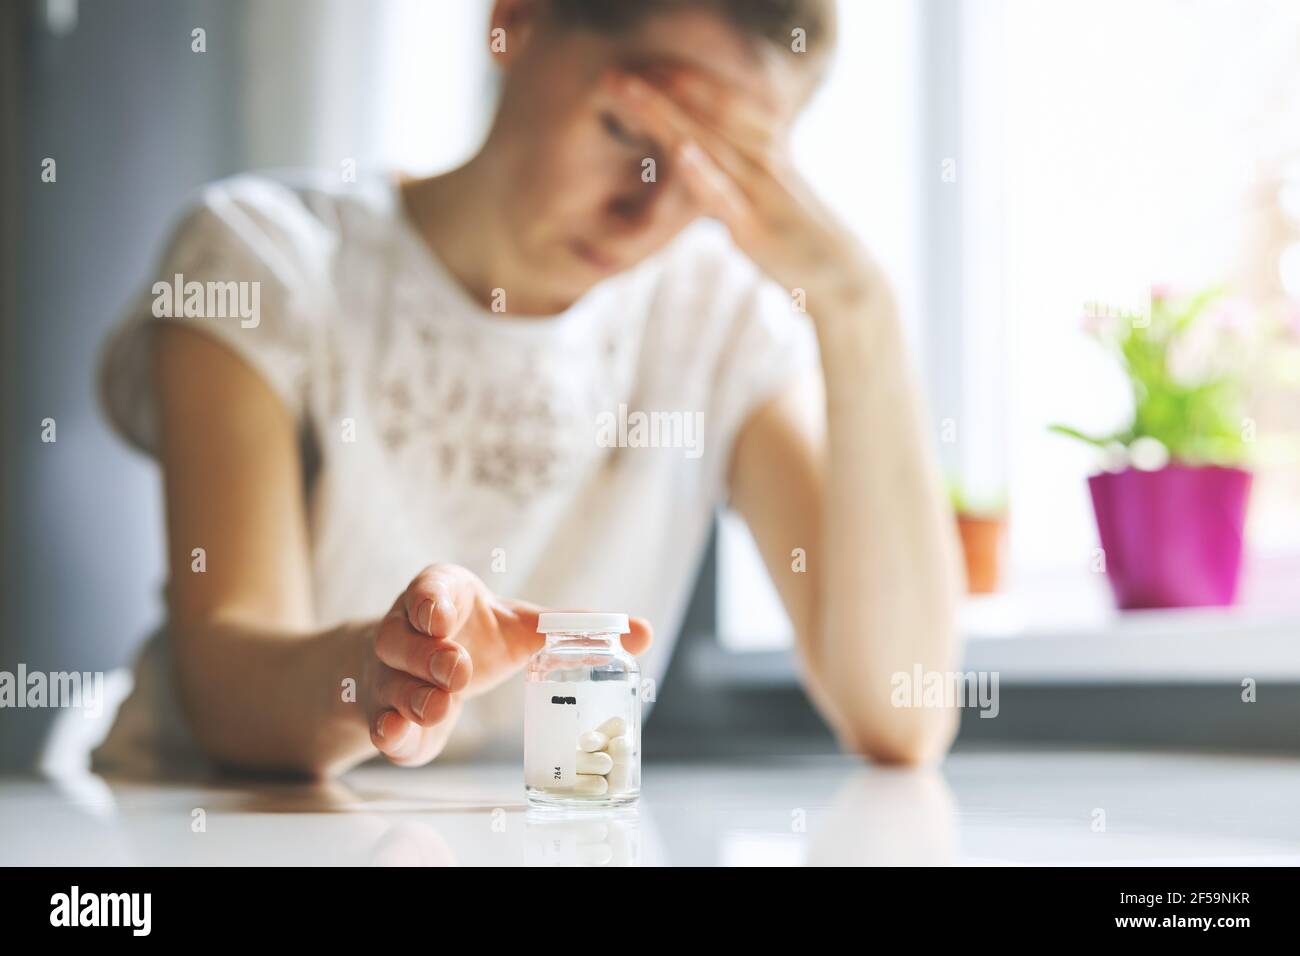 mujer con dolor de cabeza que alcanza para las píldoras del dolor. migraña, cefalalgia y el concepto del estrés Foto de stock